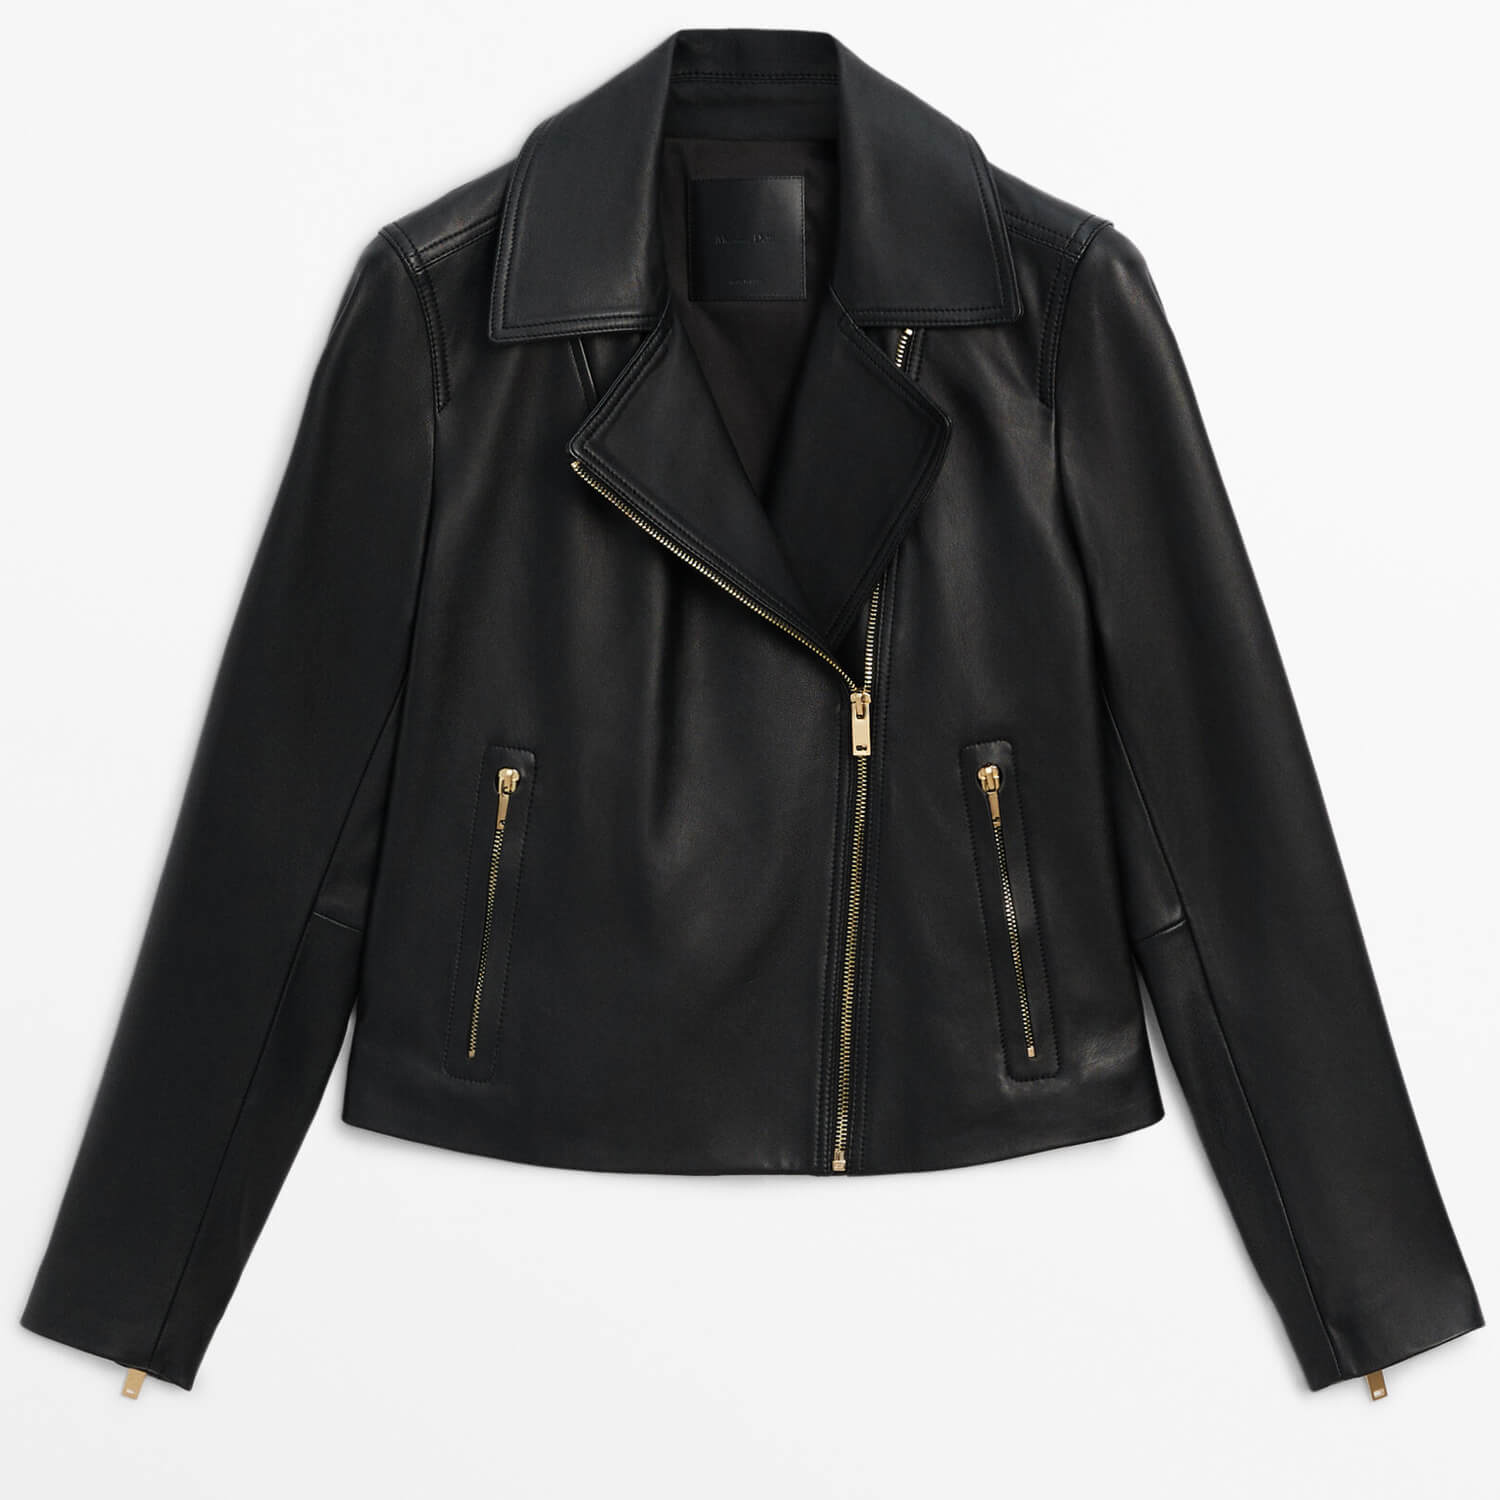 Куртка Massimo Dutti Nappa Leather Biker, черный женская куртка из натуральной кожи черная повседневная приталенная байкерская куртка из овечьей кожи 2023